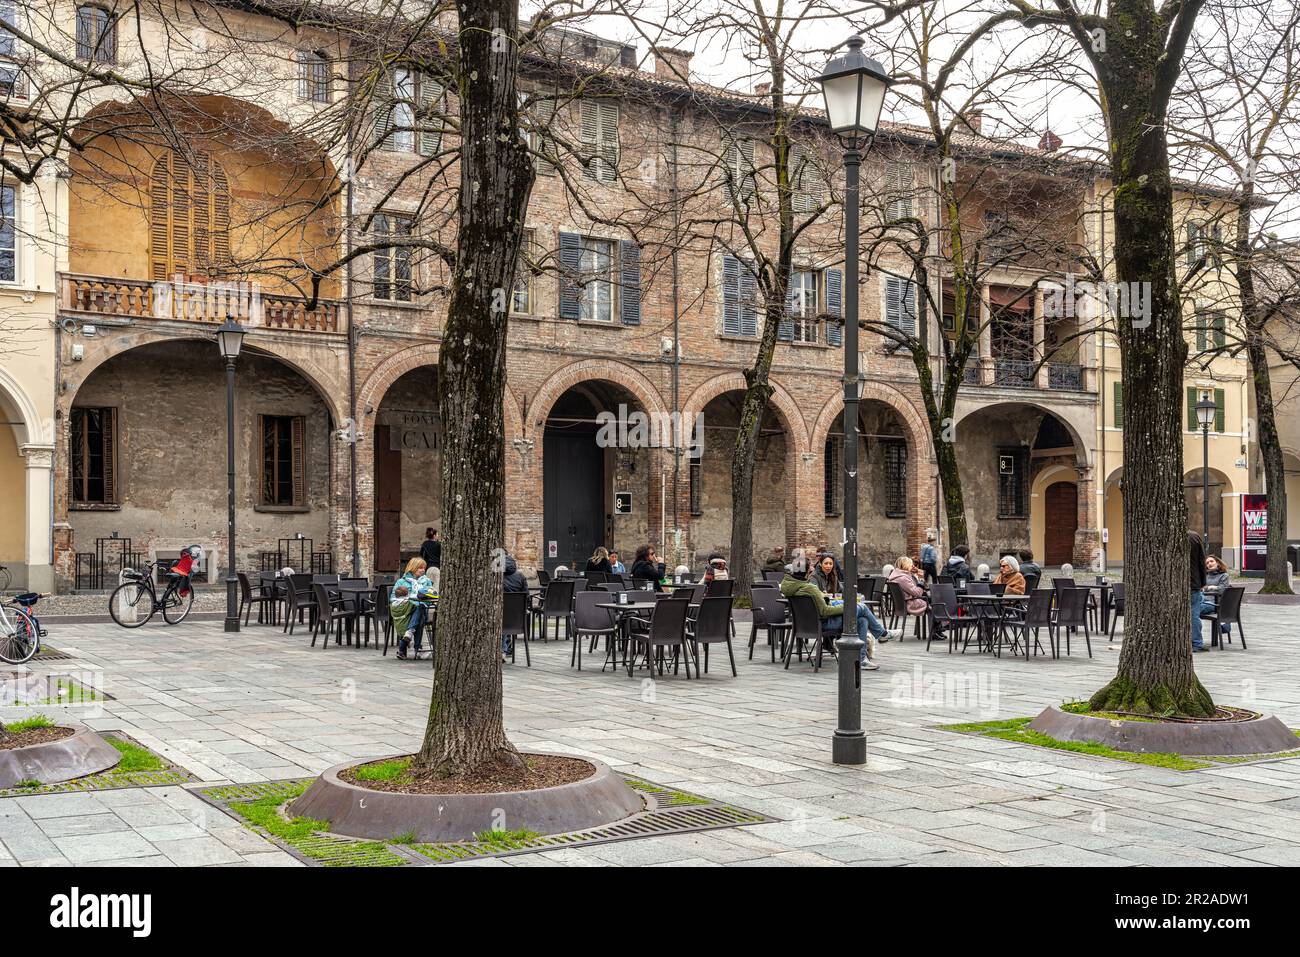 La Piazza Antonio Fontanesi tiene forma rectangular, bordeada de tilos y rodeada de arcadas en ambos lados. Reggio Emilia, Emilia Romagna, Italia, Foto de stock